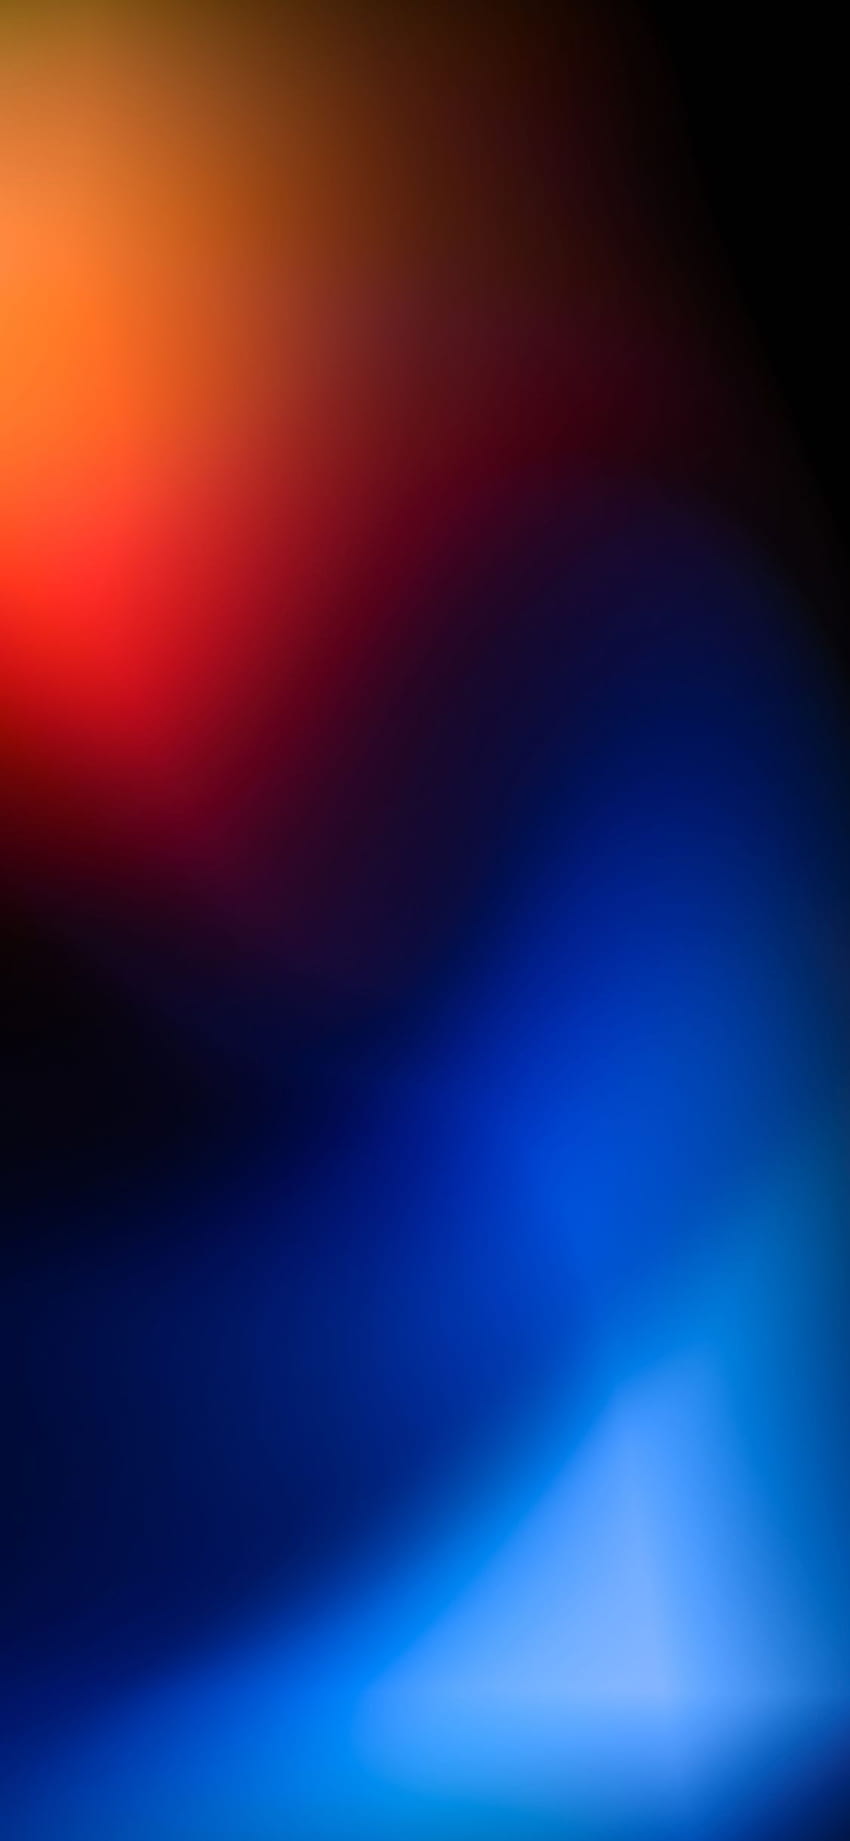 Những cơn mê hoặc chiếc iPhone X đầy màu sắc, ấn tượng sẽ được thỏa mãn với bức hình tranh nền 1125x2436 Abstract Red Blue Blur Iphone XS,Iphone 10,Iphone X...hấp dẫn này. Hãy truy cập ngay để tải về và cập nhật cho chiếc iPhone của bạn.